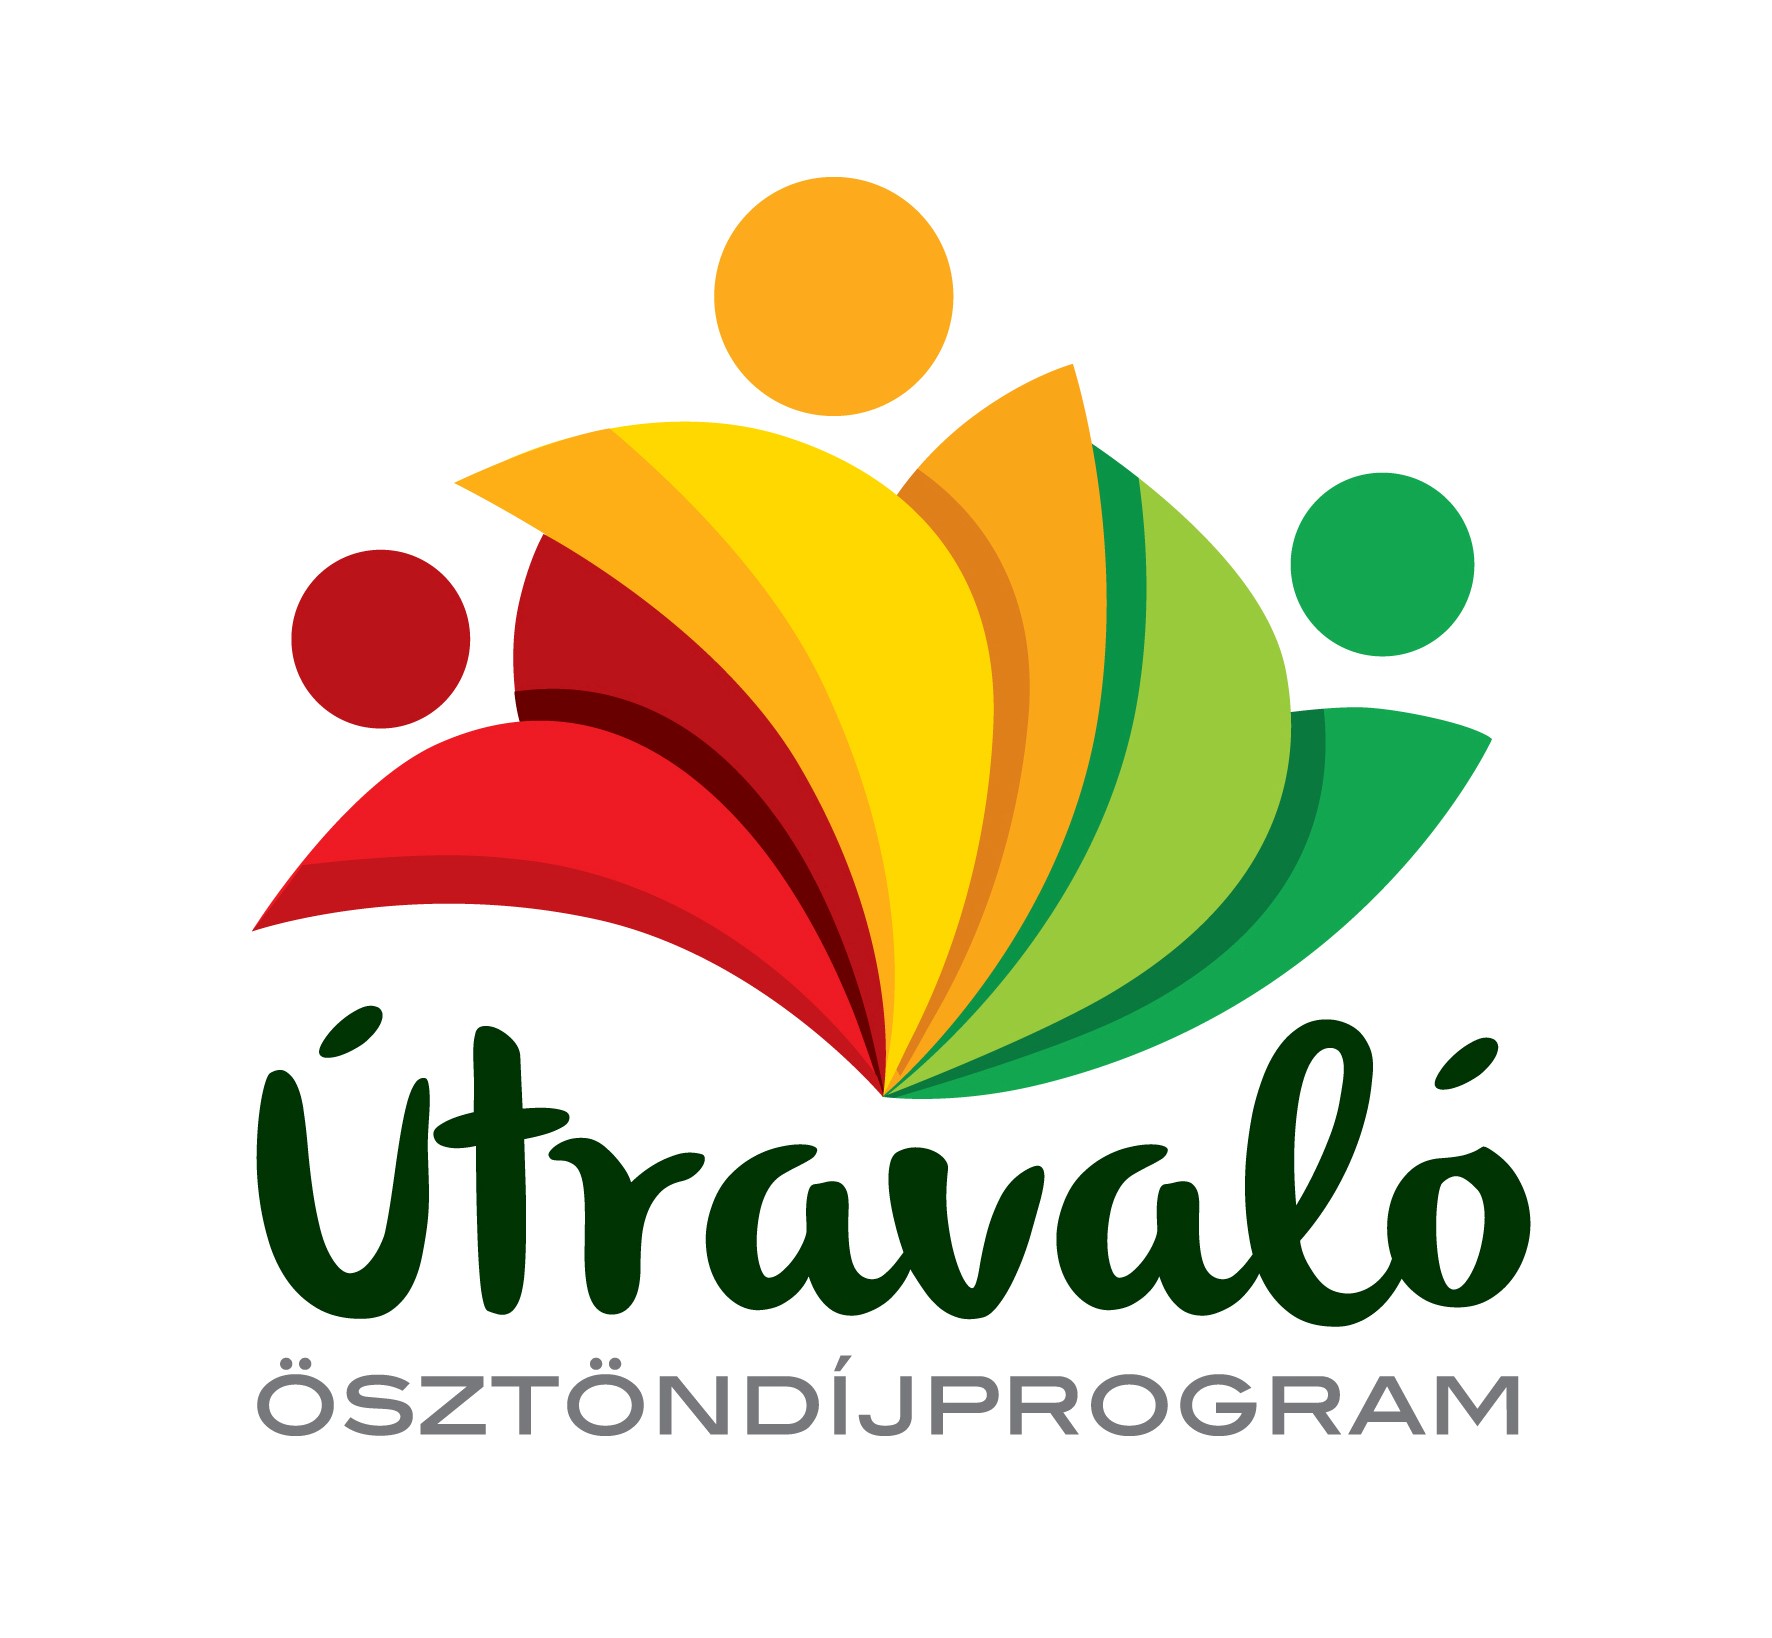 Ösztöndíj és mentorálási támogatás hátrányos helyzetű tanulóknak: „Útravaló  Ösztöndíjprogram” - Balástya község honlapja